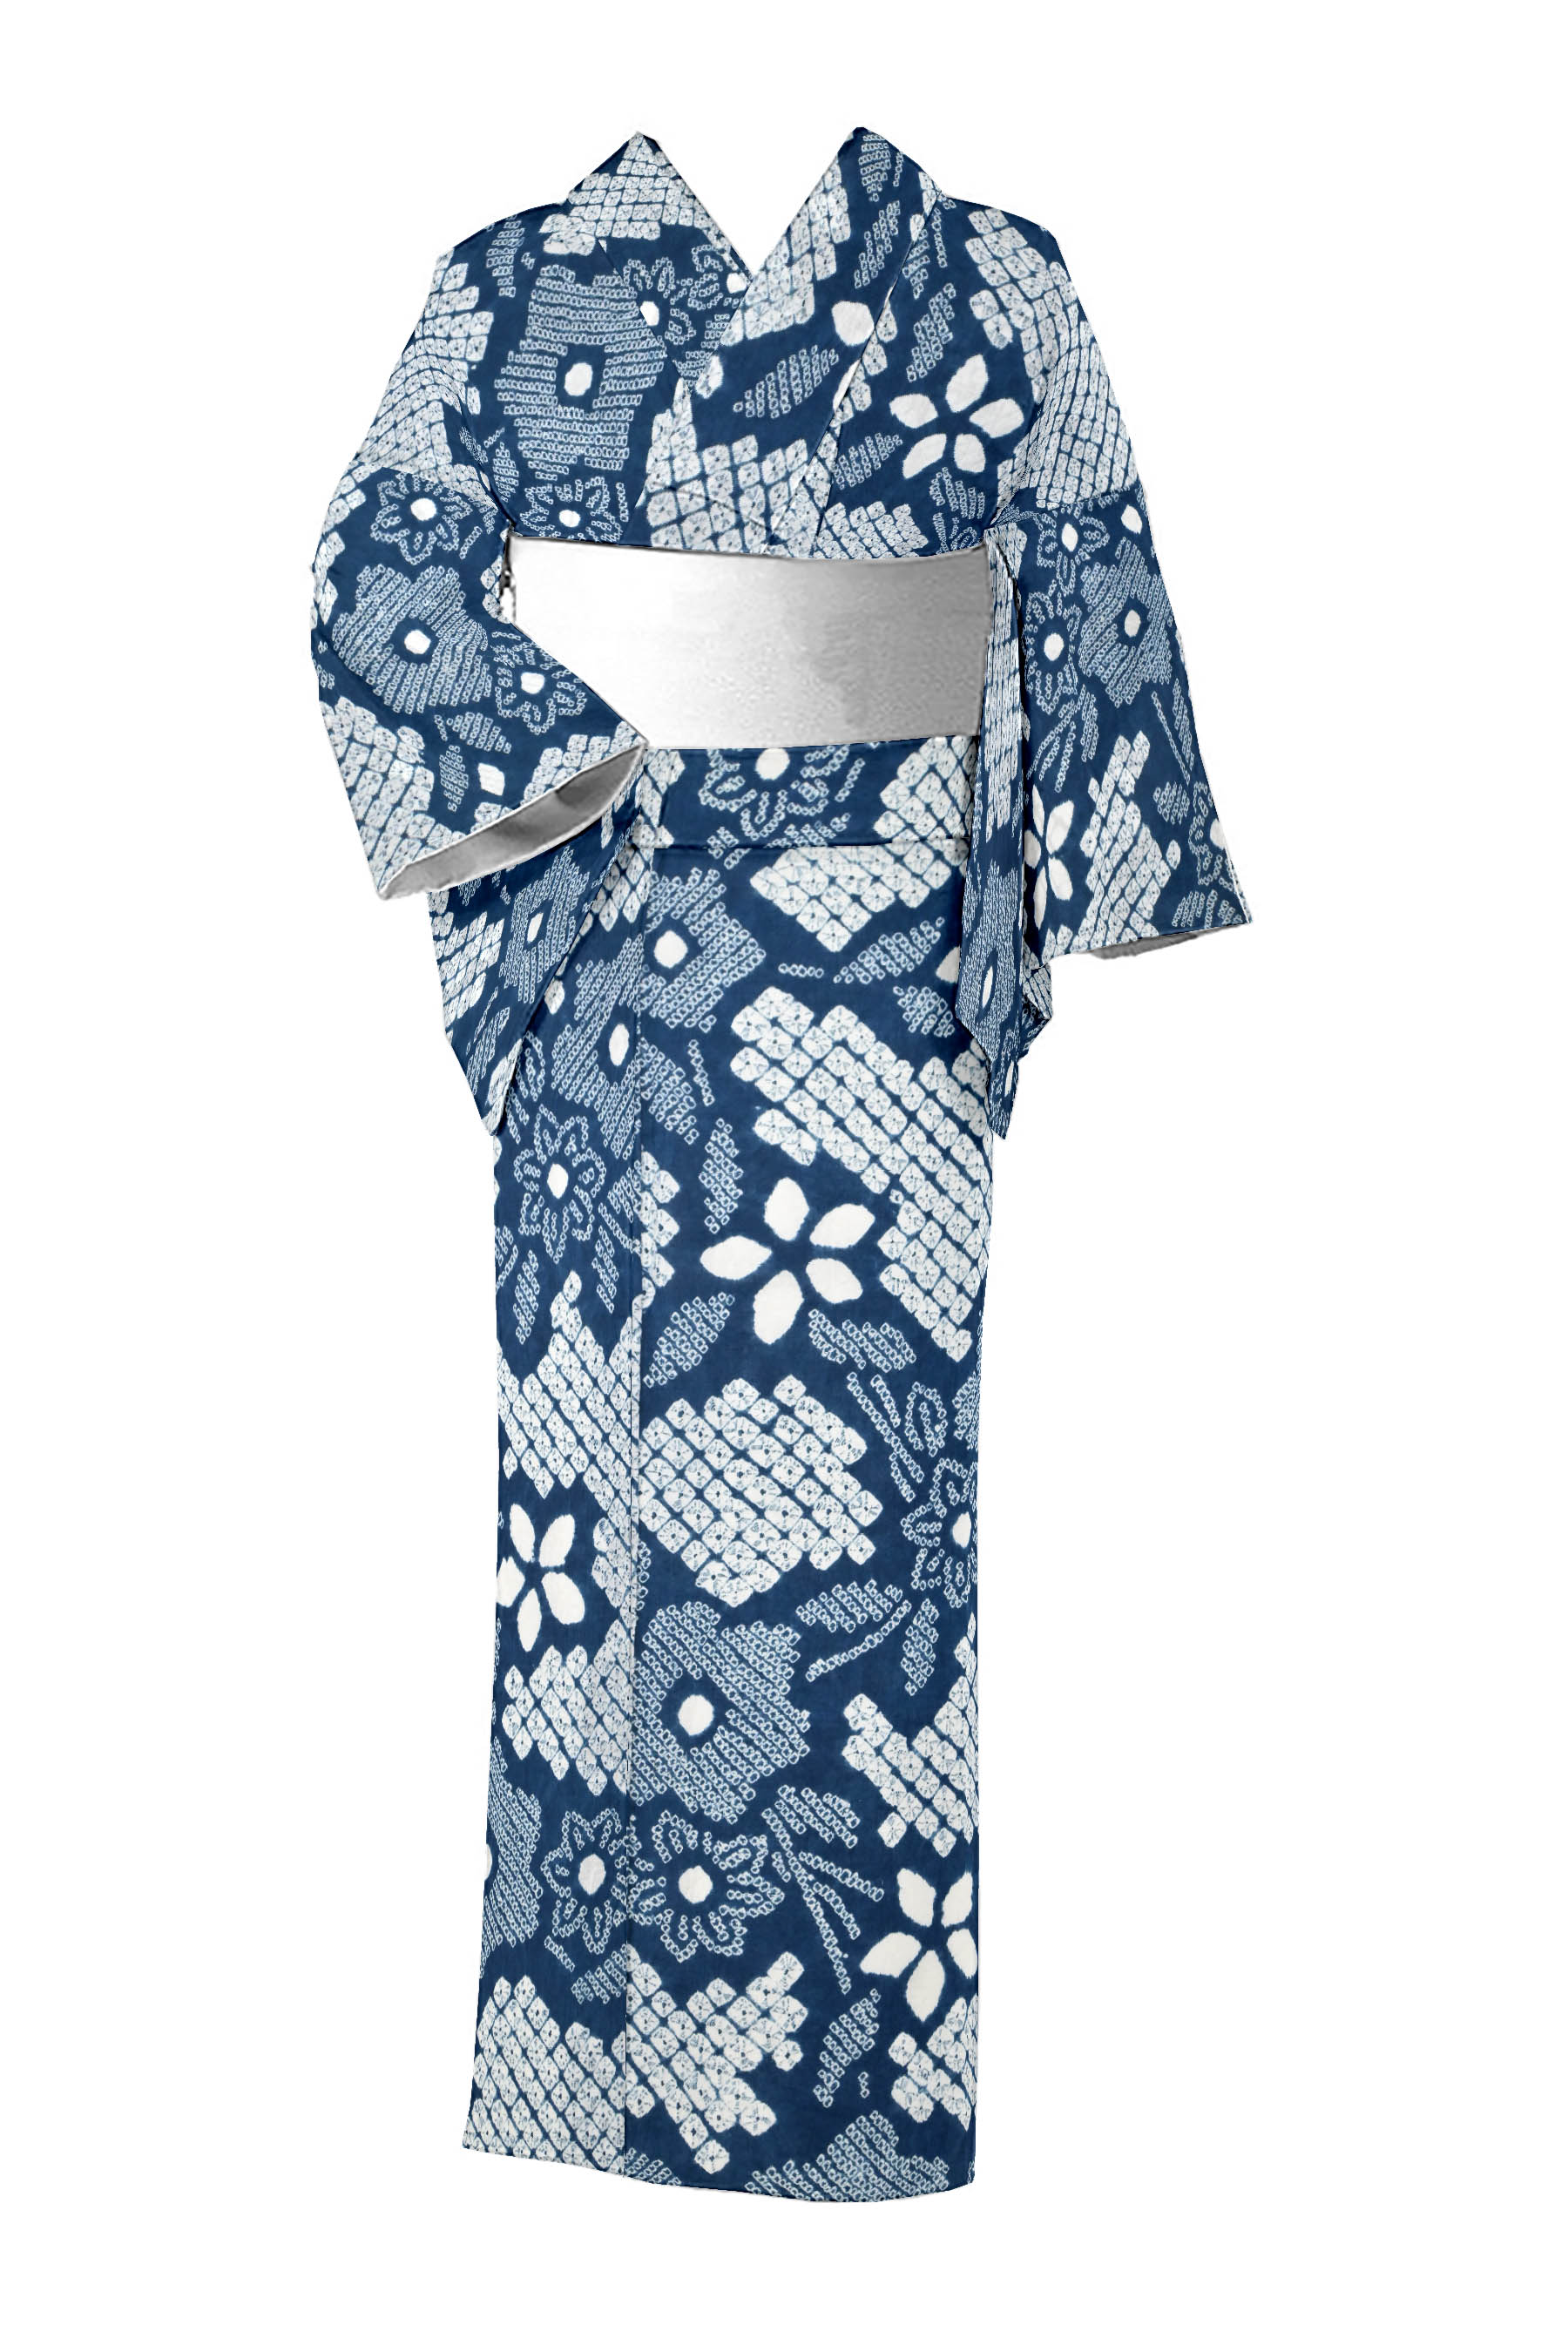 藤娘きぬたやの着物・帯の一覧|京都きもの市場【日本最大級の着物通販